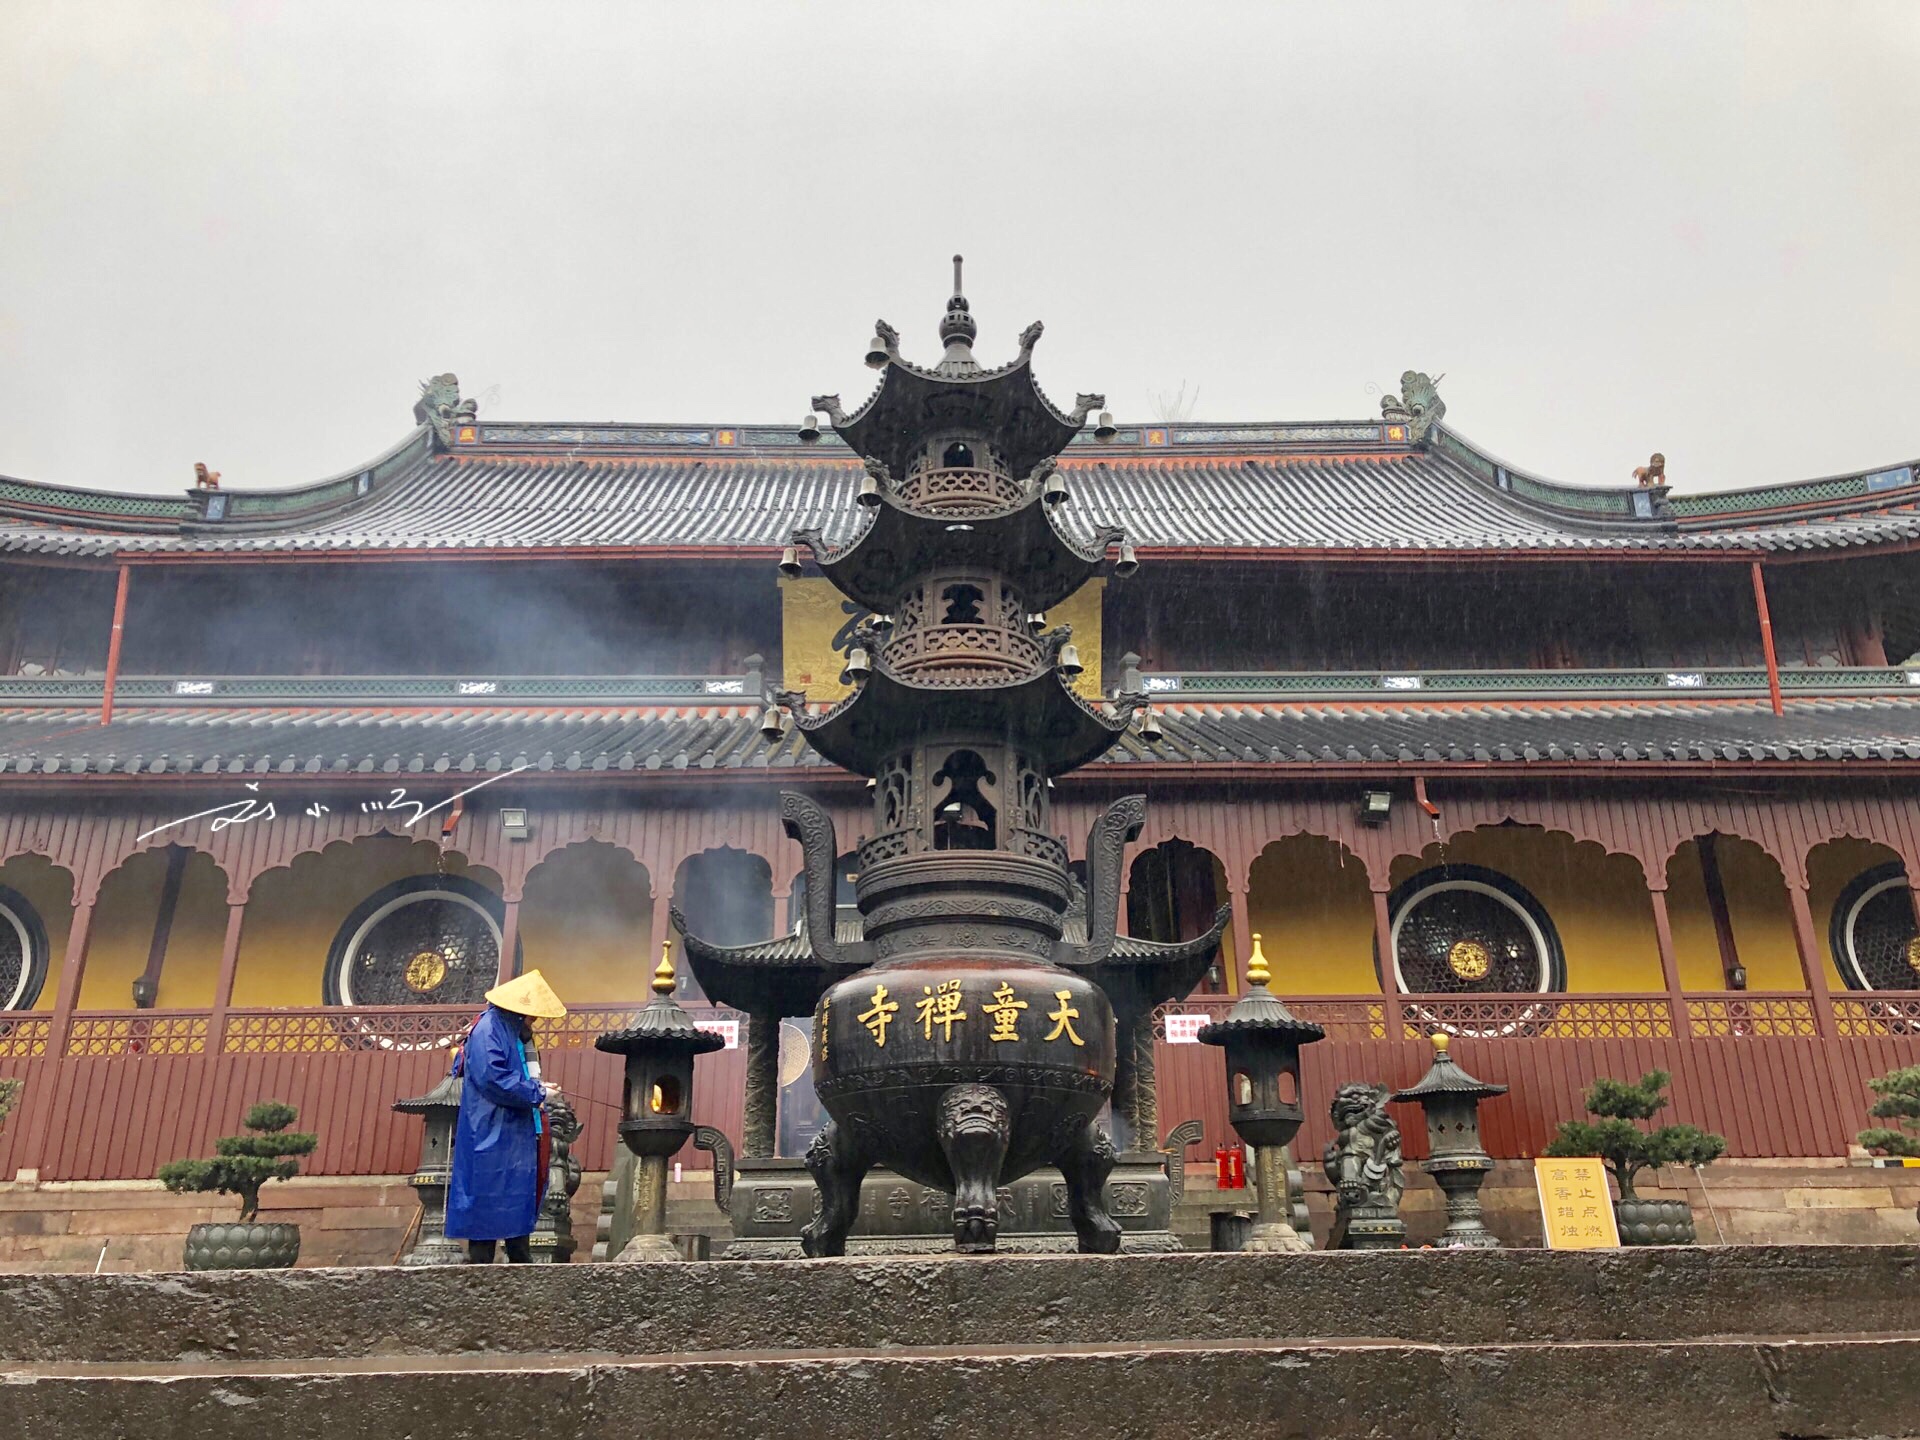 原创宁波最著名的寺庙,已有1700多年历史,还是日本佛教曹洞宗的祖庭